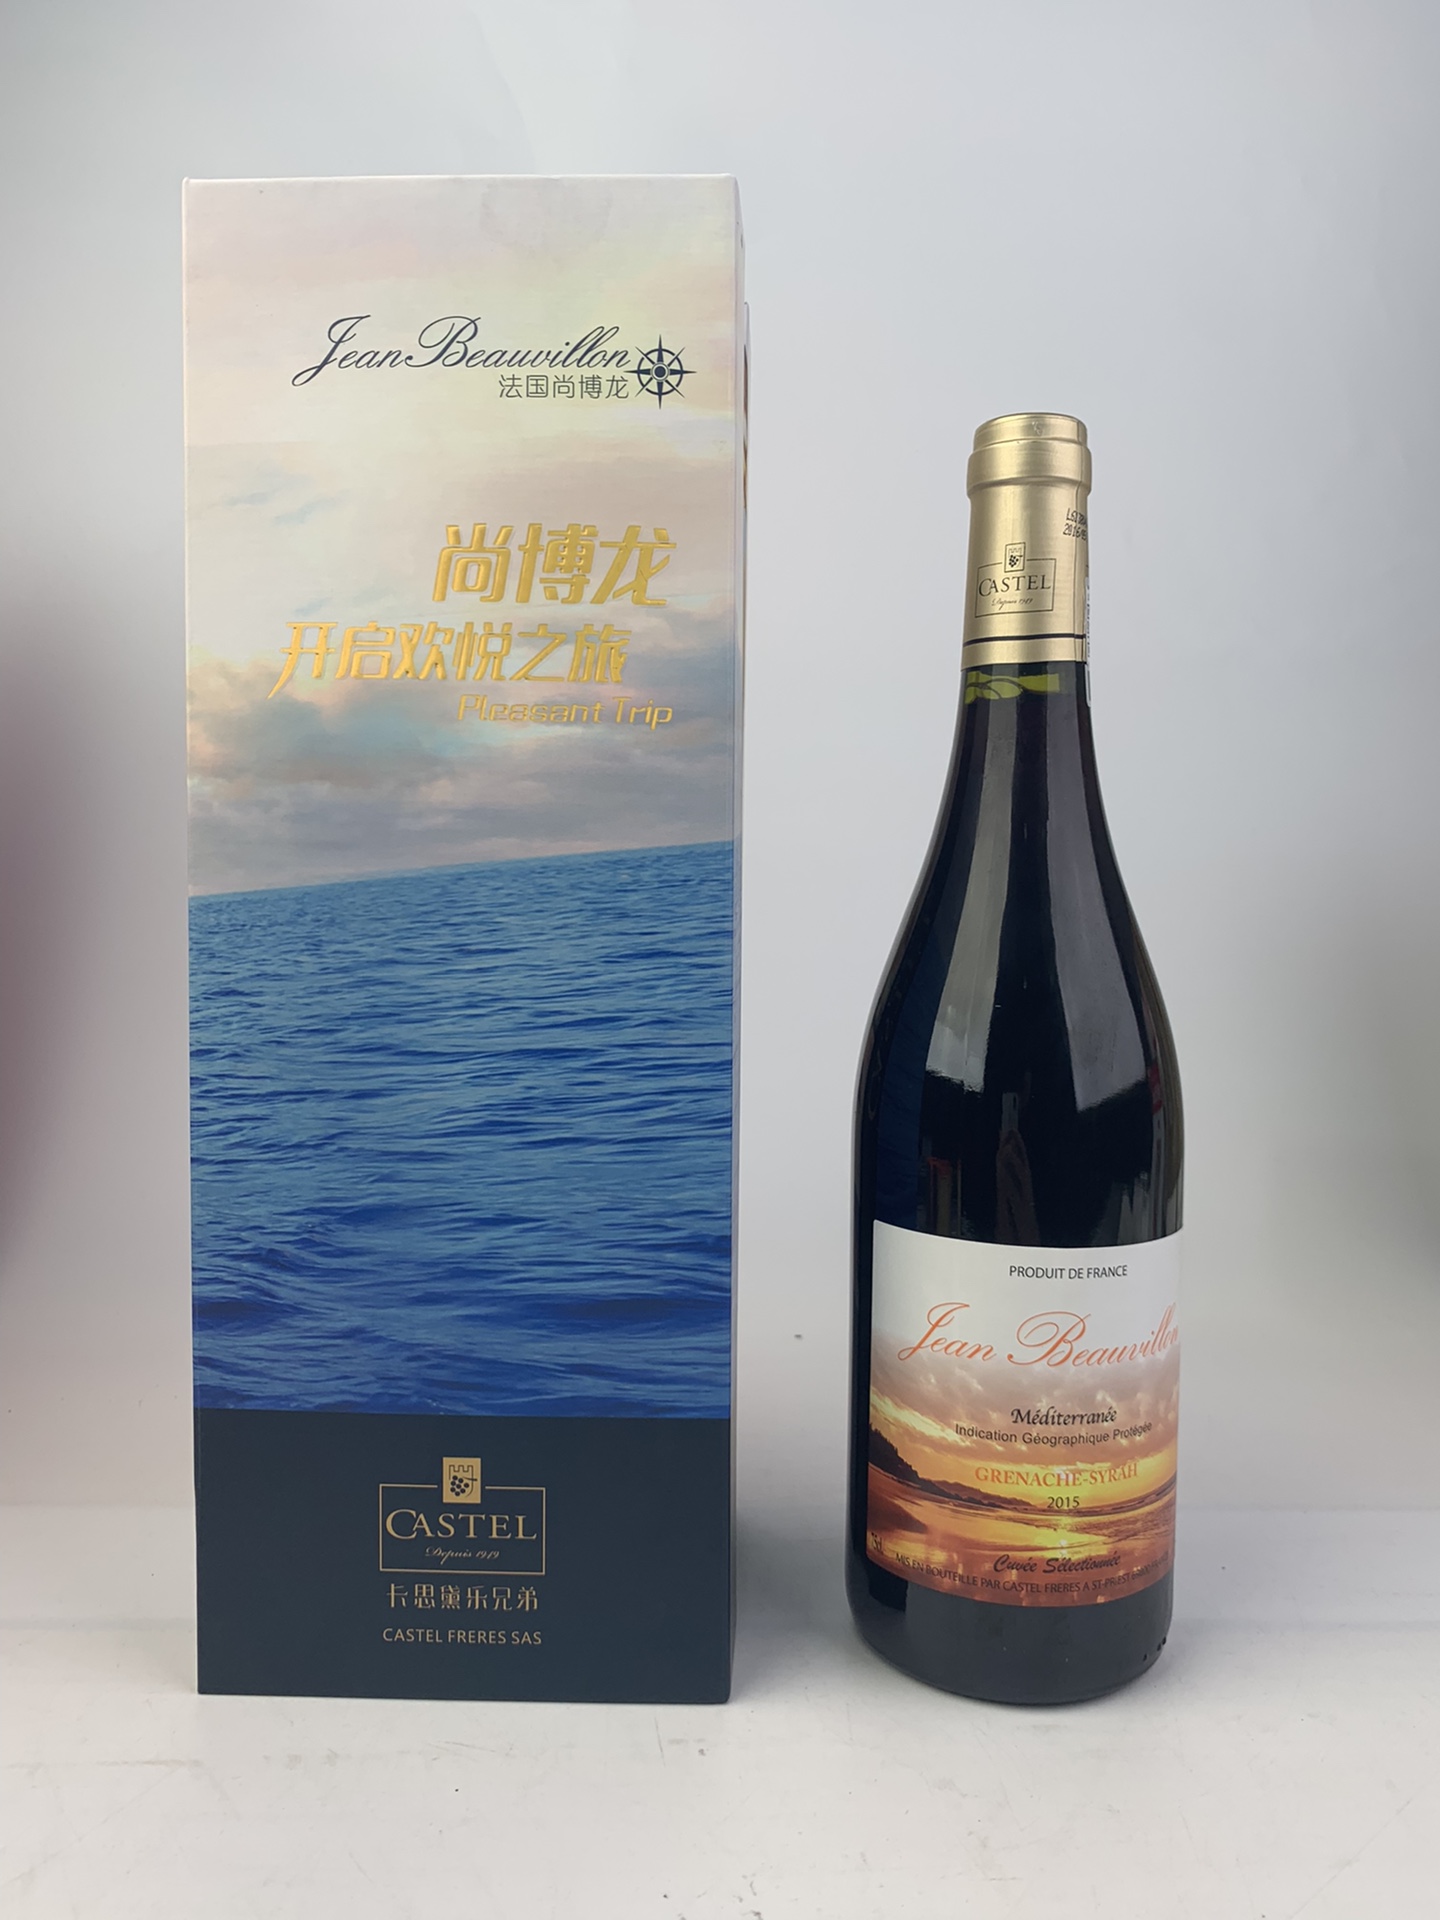 卡思黛乐尚博龙地中海精选红葡萄酒2015年礼盒装